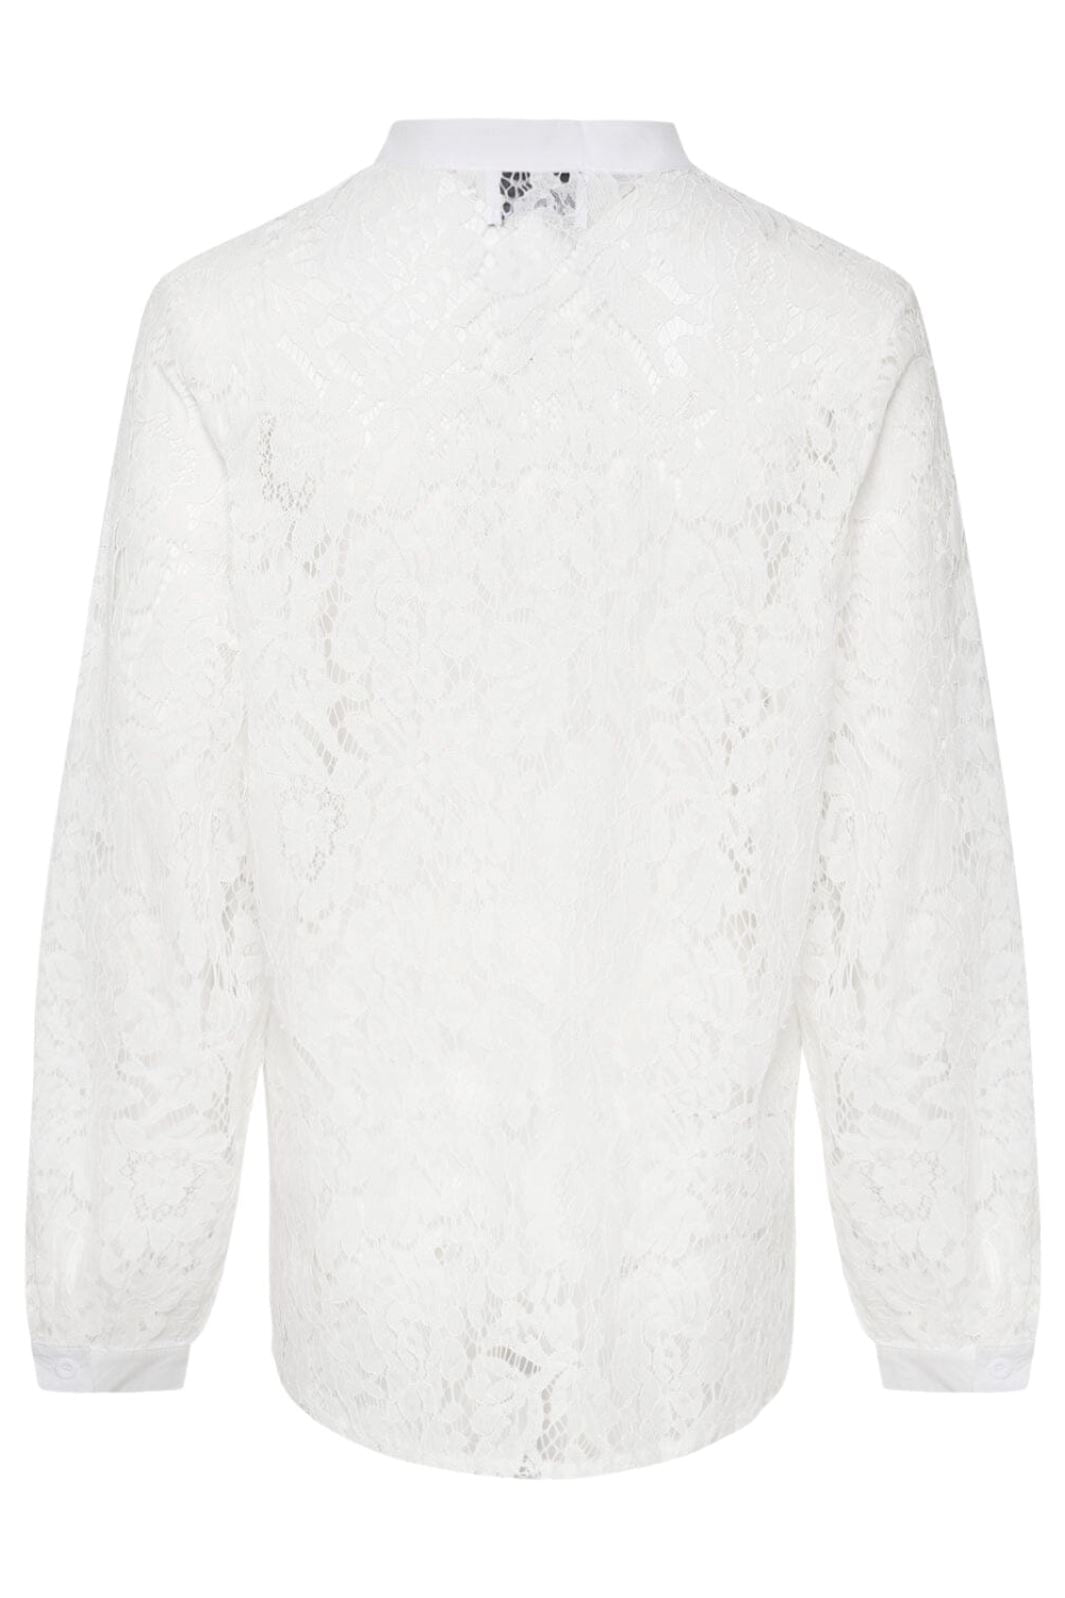 Noella - Briston Shirt - 028 White Skjorter 